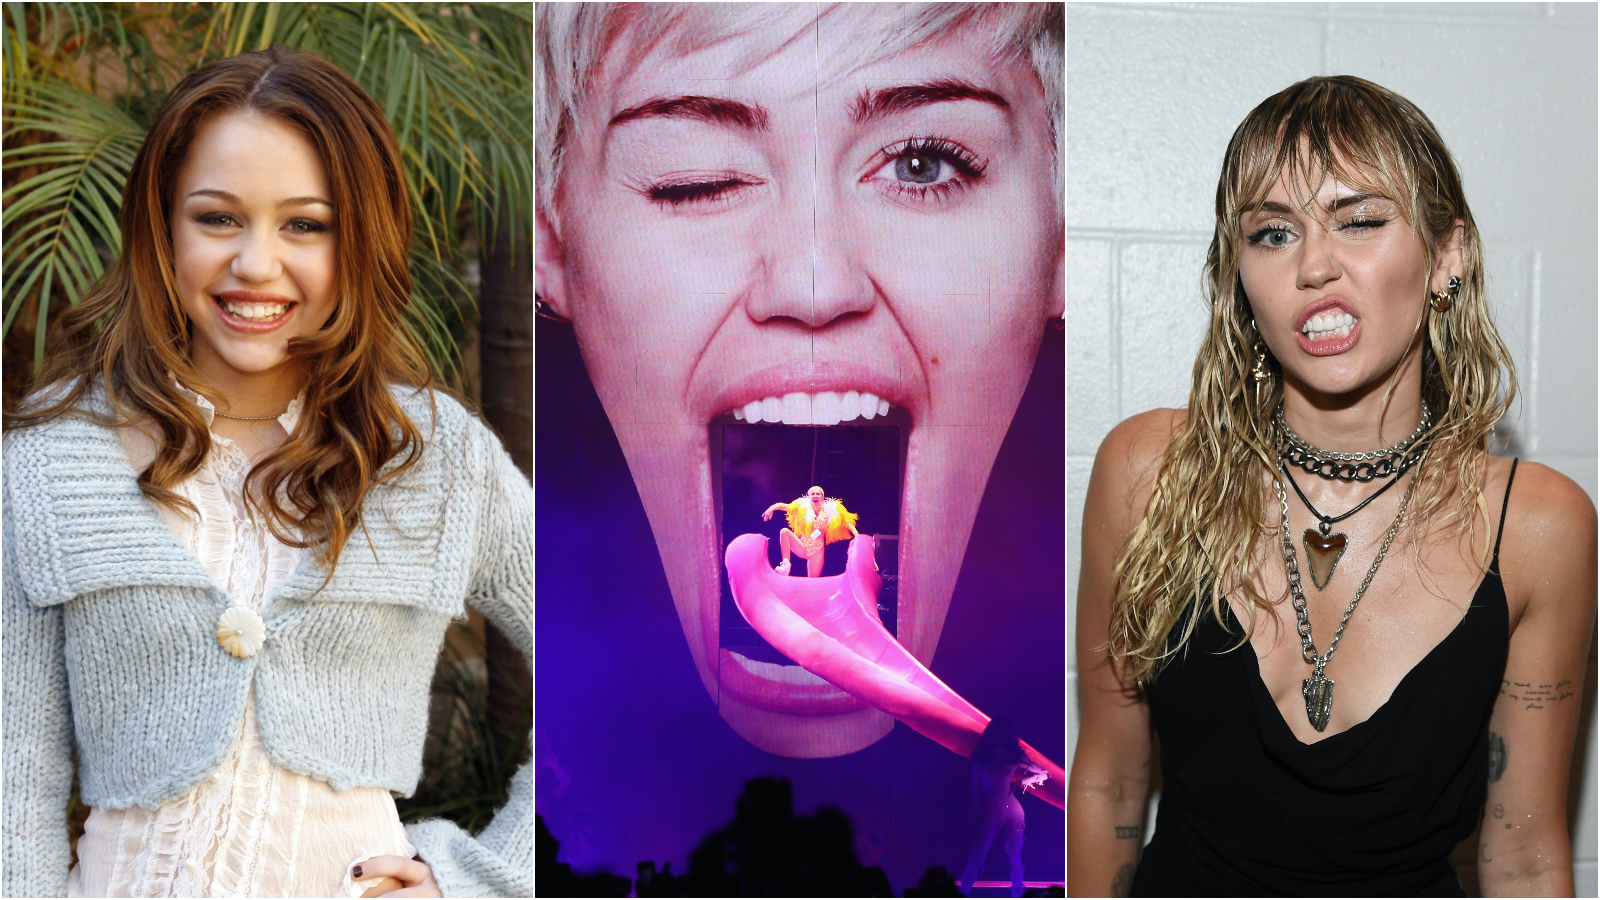 Hannah Montanától a Bundesliga-frizuráig: Miley Cyrus egy igazi kaméleon